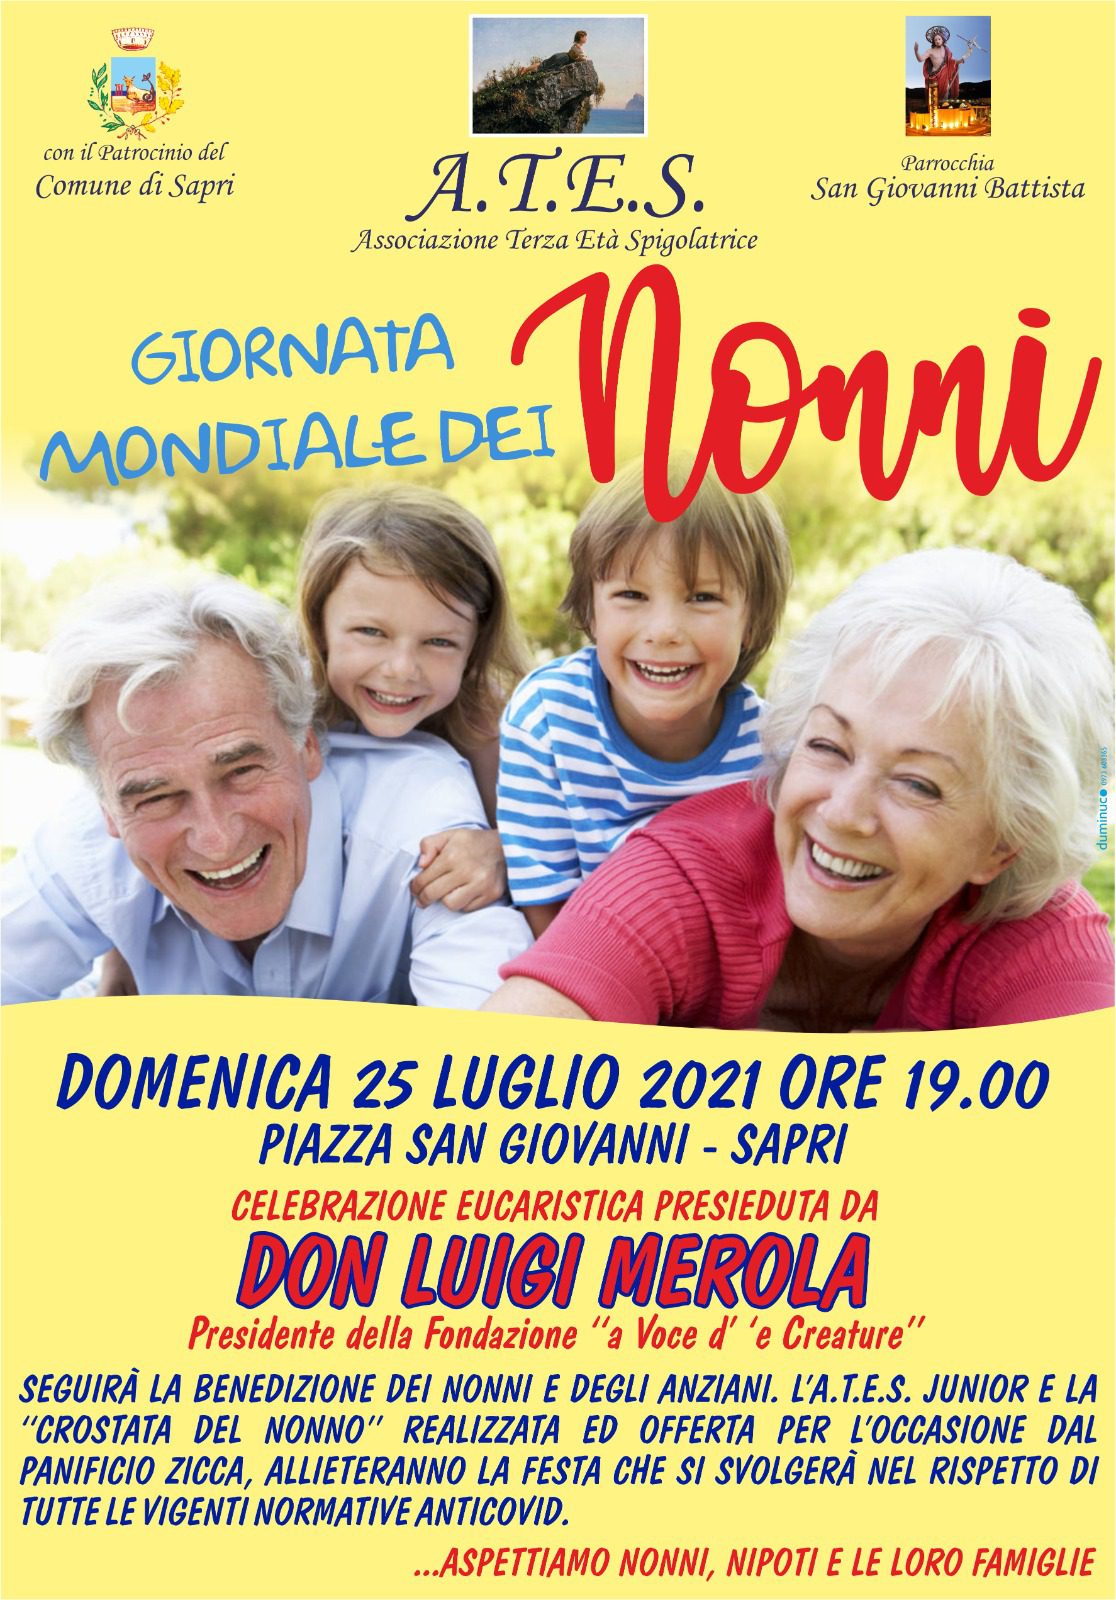 Giornata mondiale dei nonni, Sapri li celebra e valorizza con don Luigi Merola